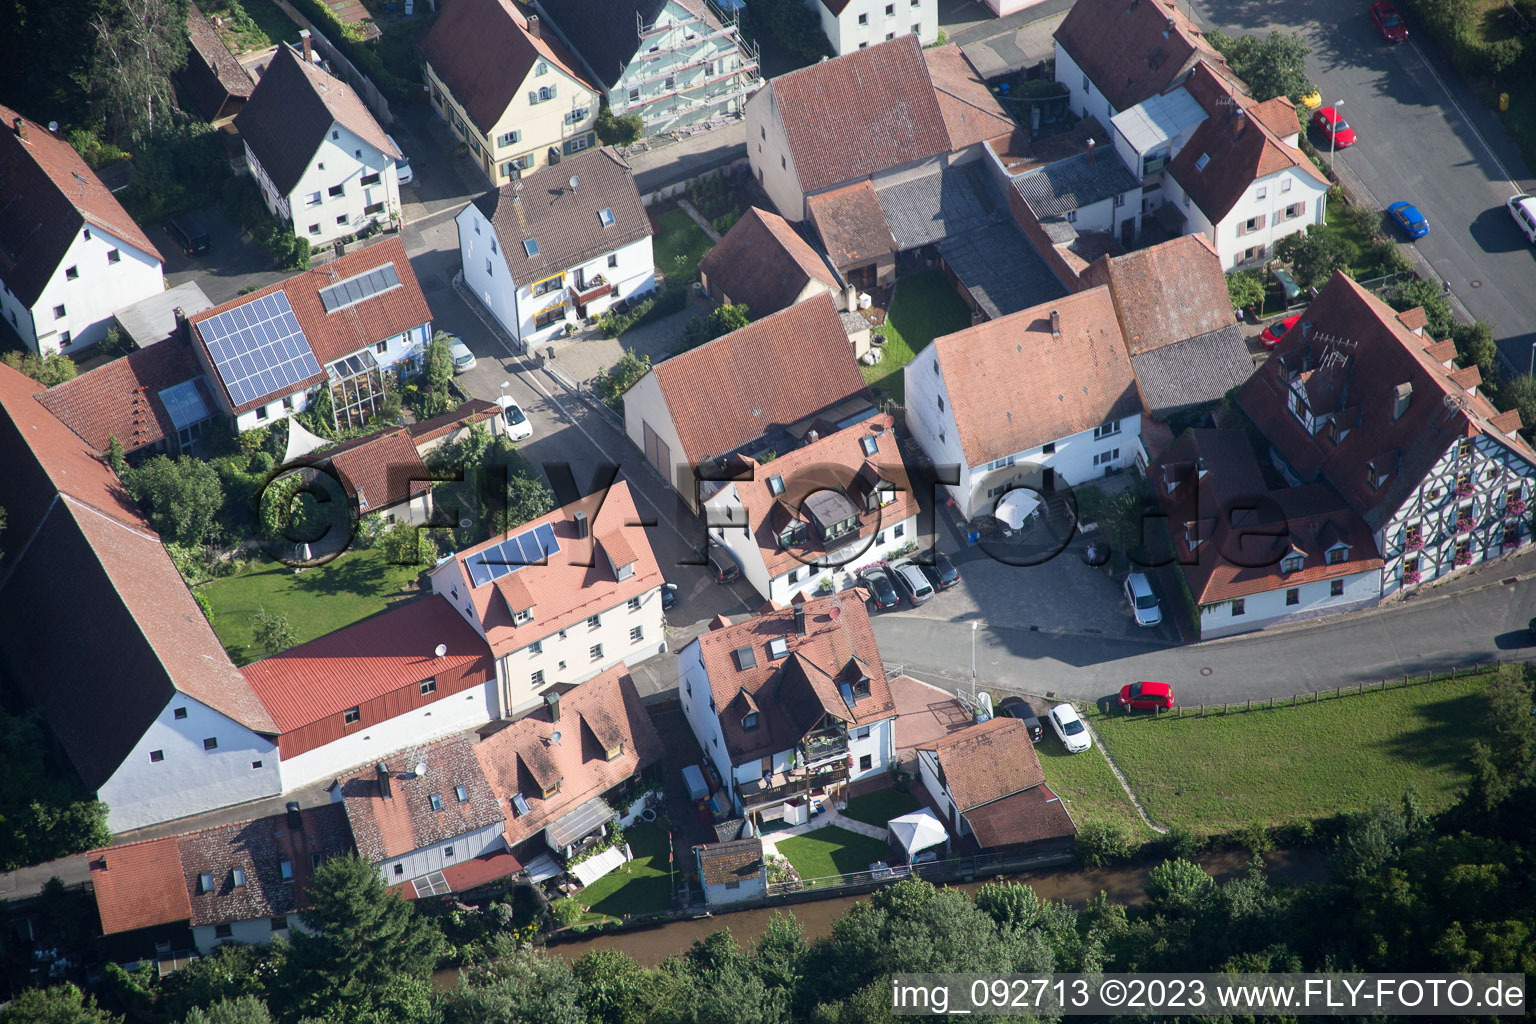 Frauenaurach im Bundesland Bayern, Deutschland von oben gesehen